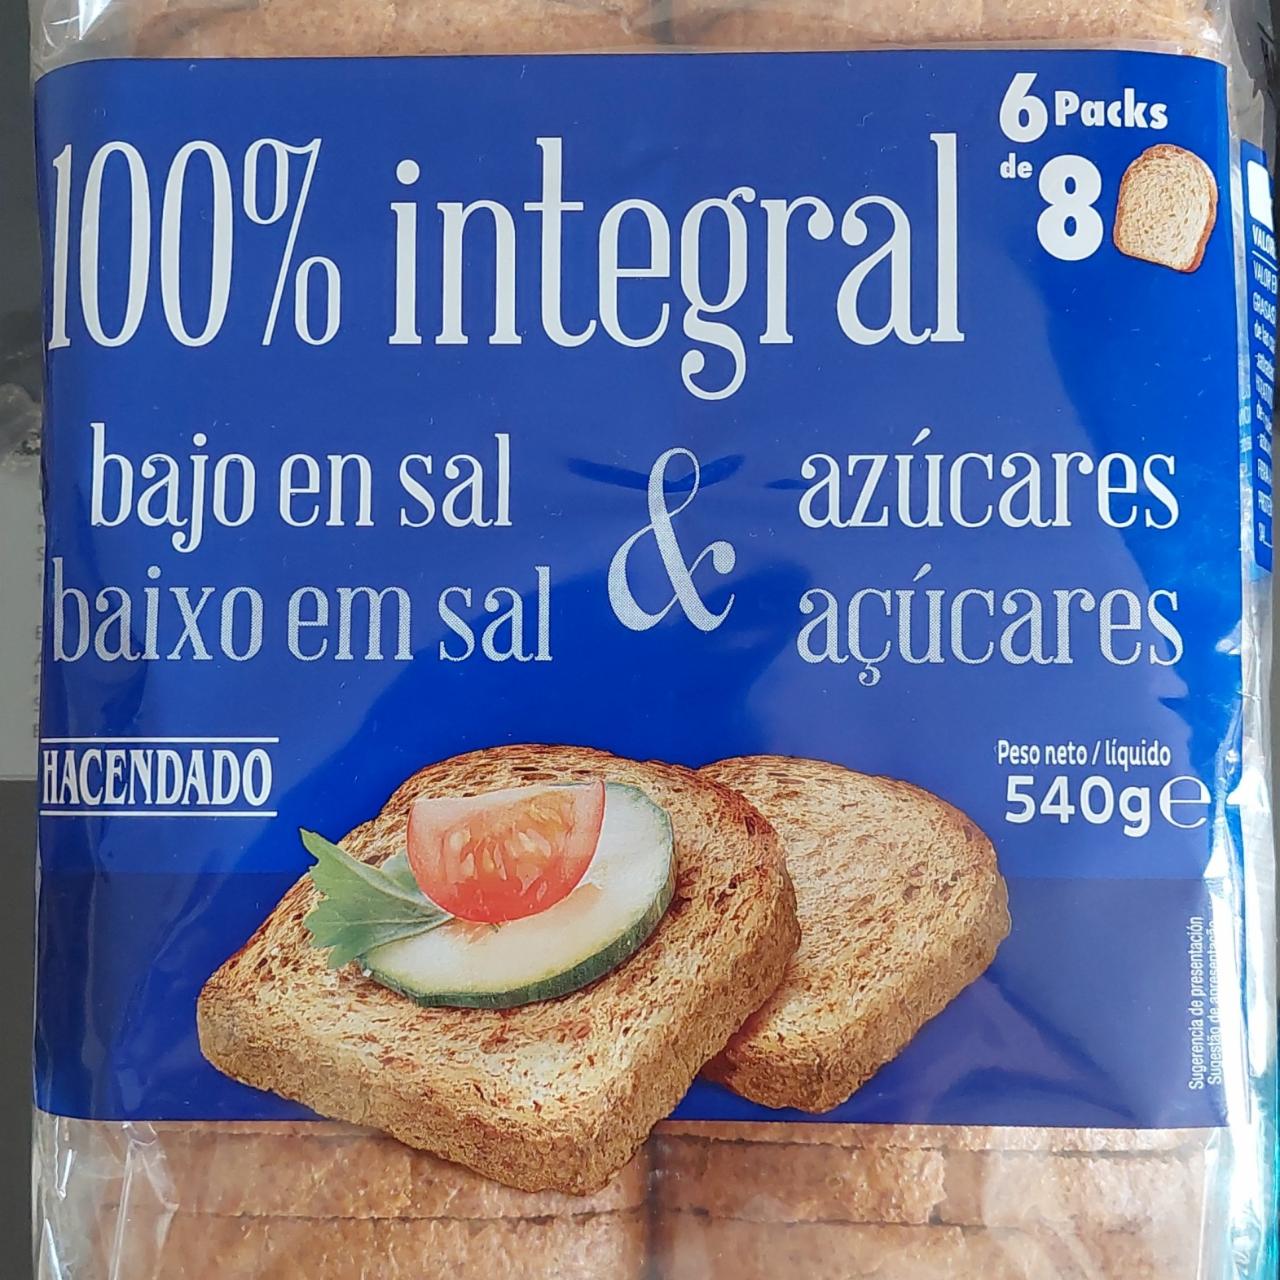 Фото - Хлеб тостовый подсушенный Hacendado